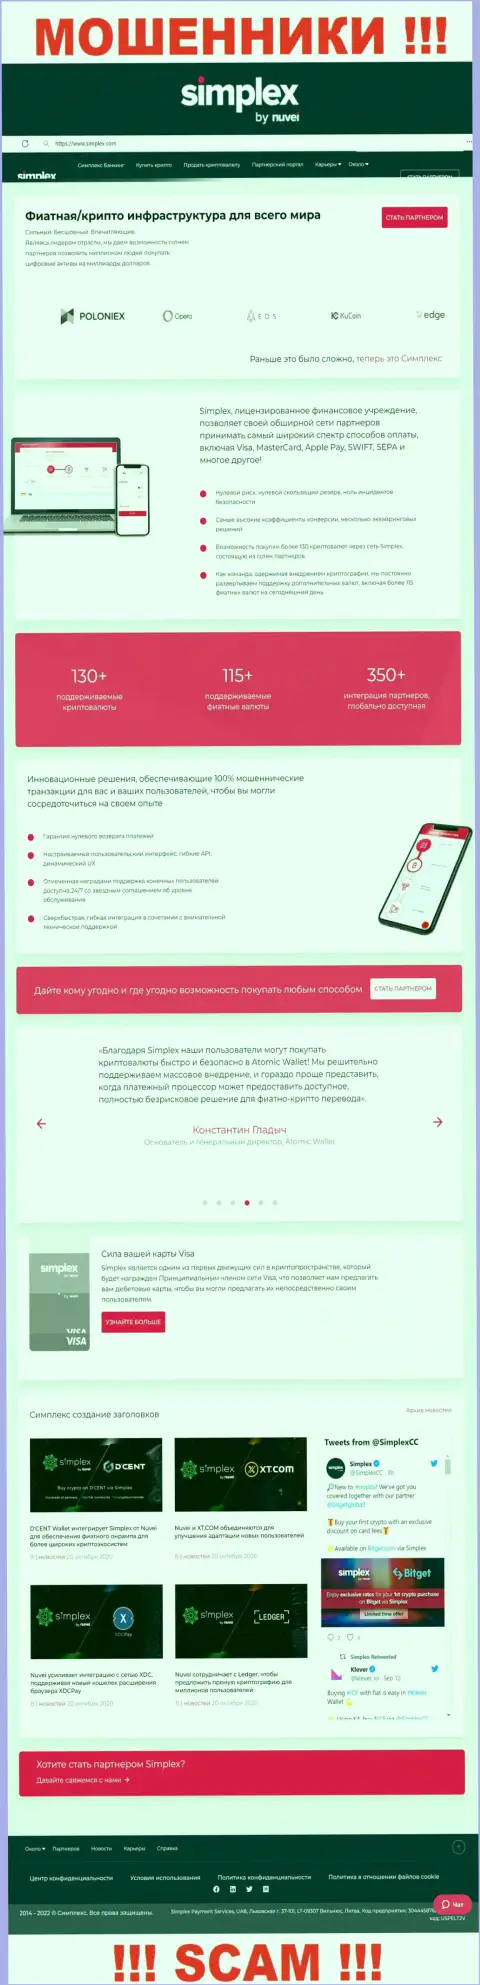 Вид официальной web-странички противоправно действующей компании Симплекс Пеймент Сервис, ЮАБ